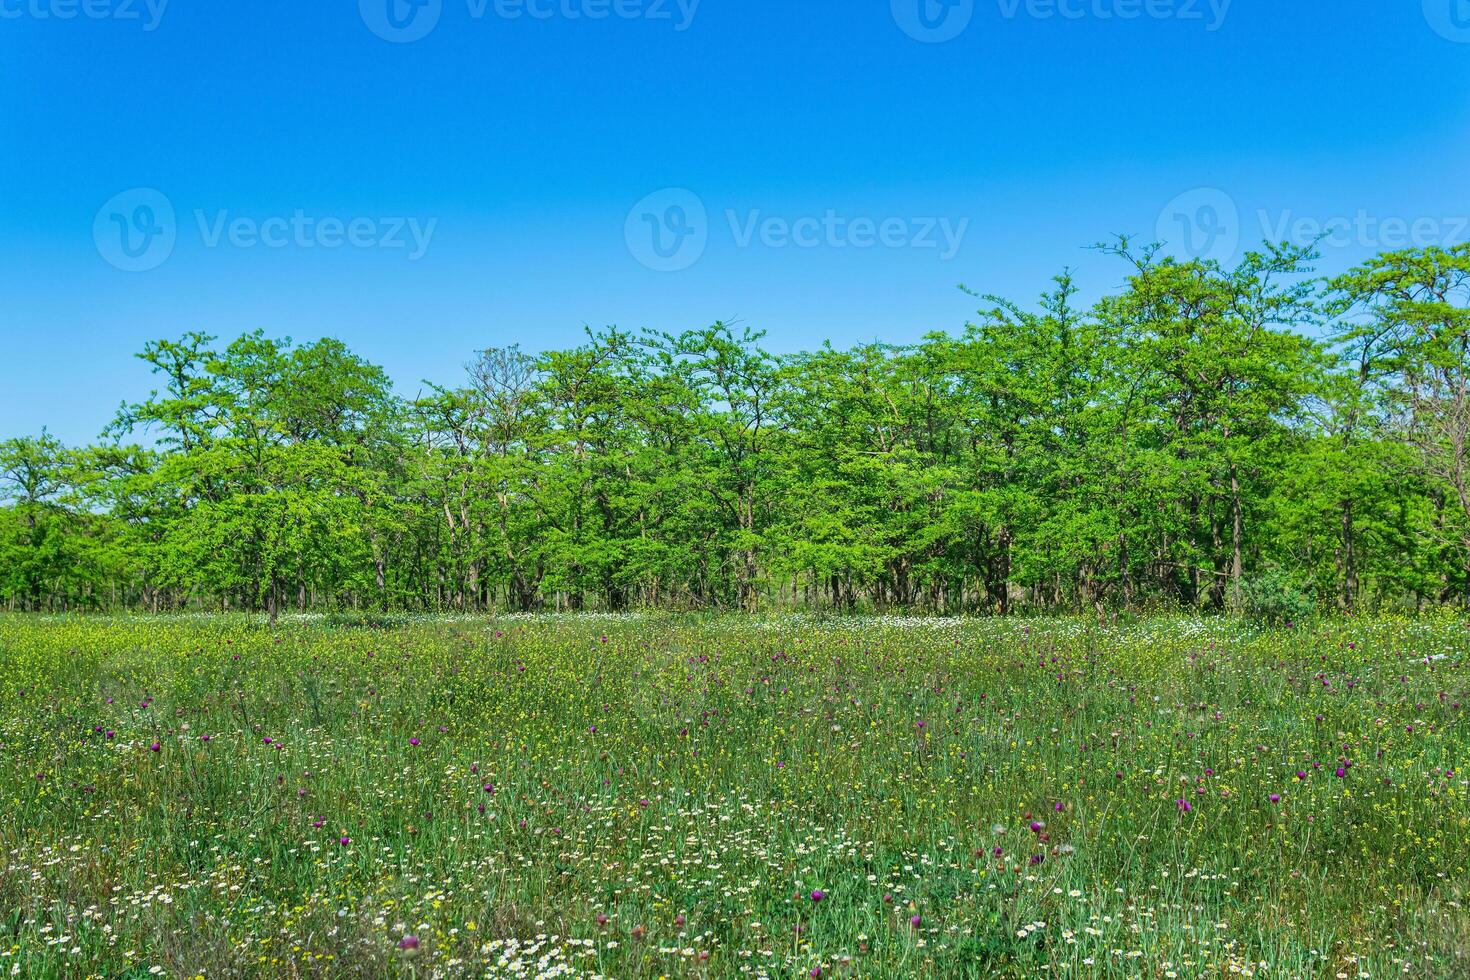 voorjaar zonnig Open bos- landschap met bloeiend weide en bladverliezend bosjes foto